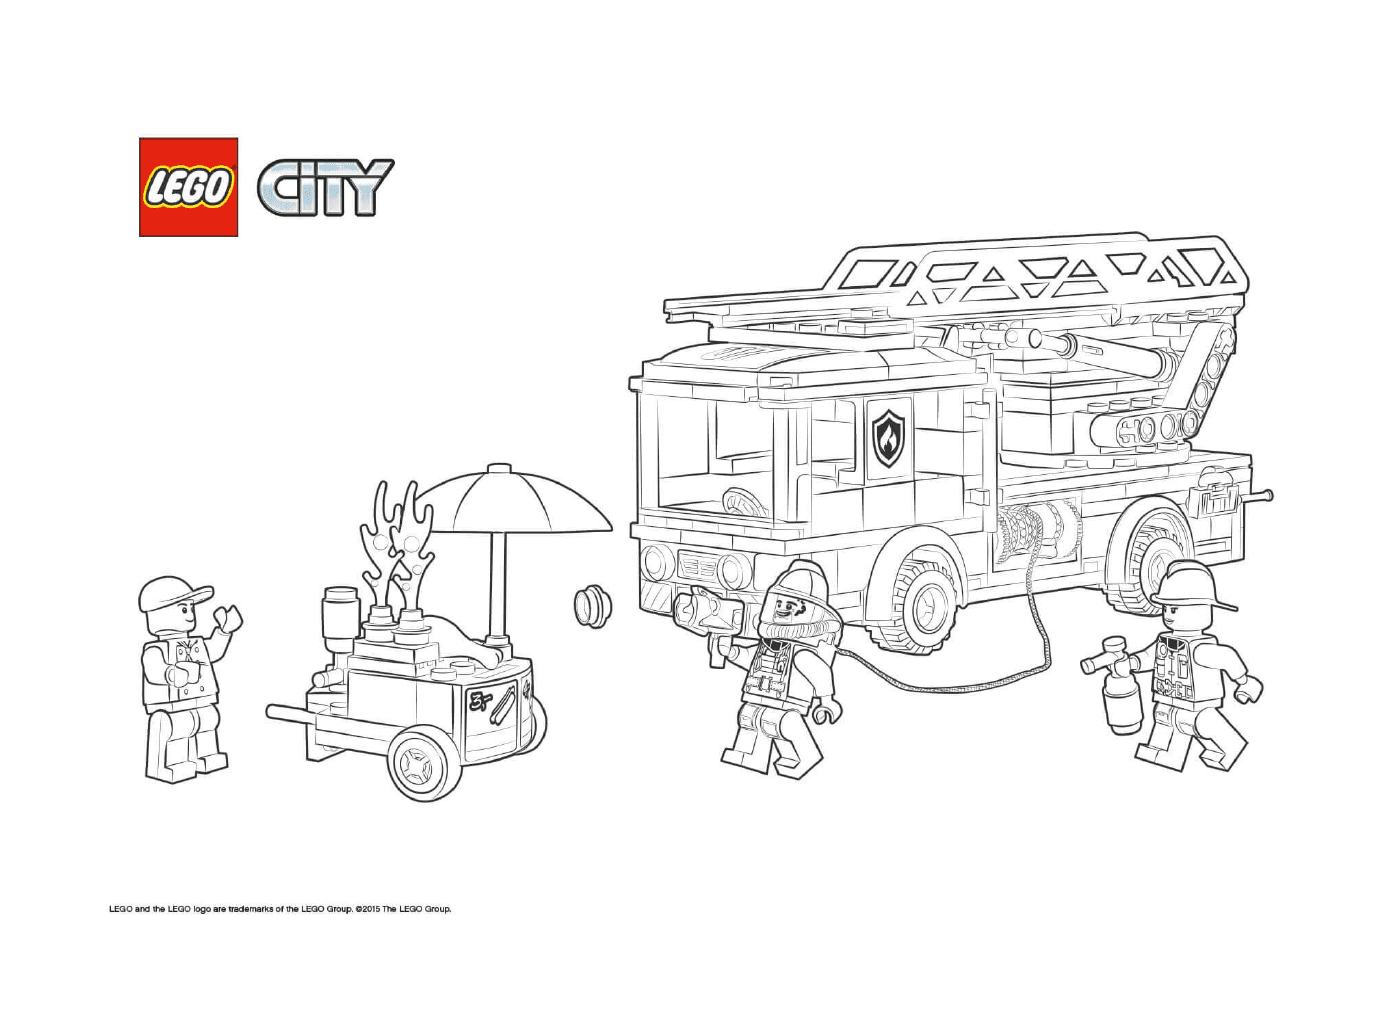  Departamento de Bomberos de Lego City 